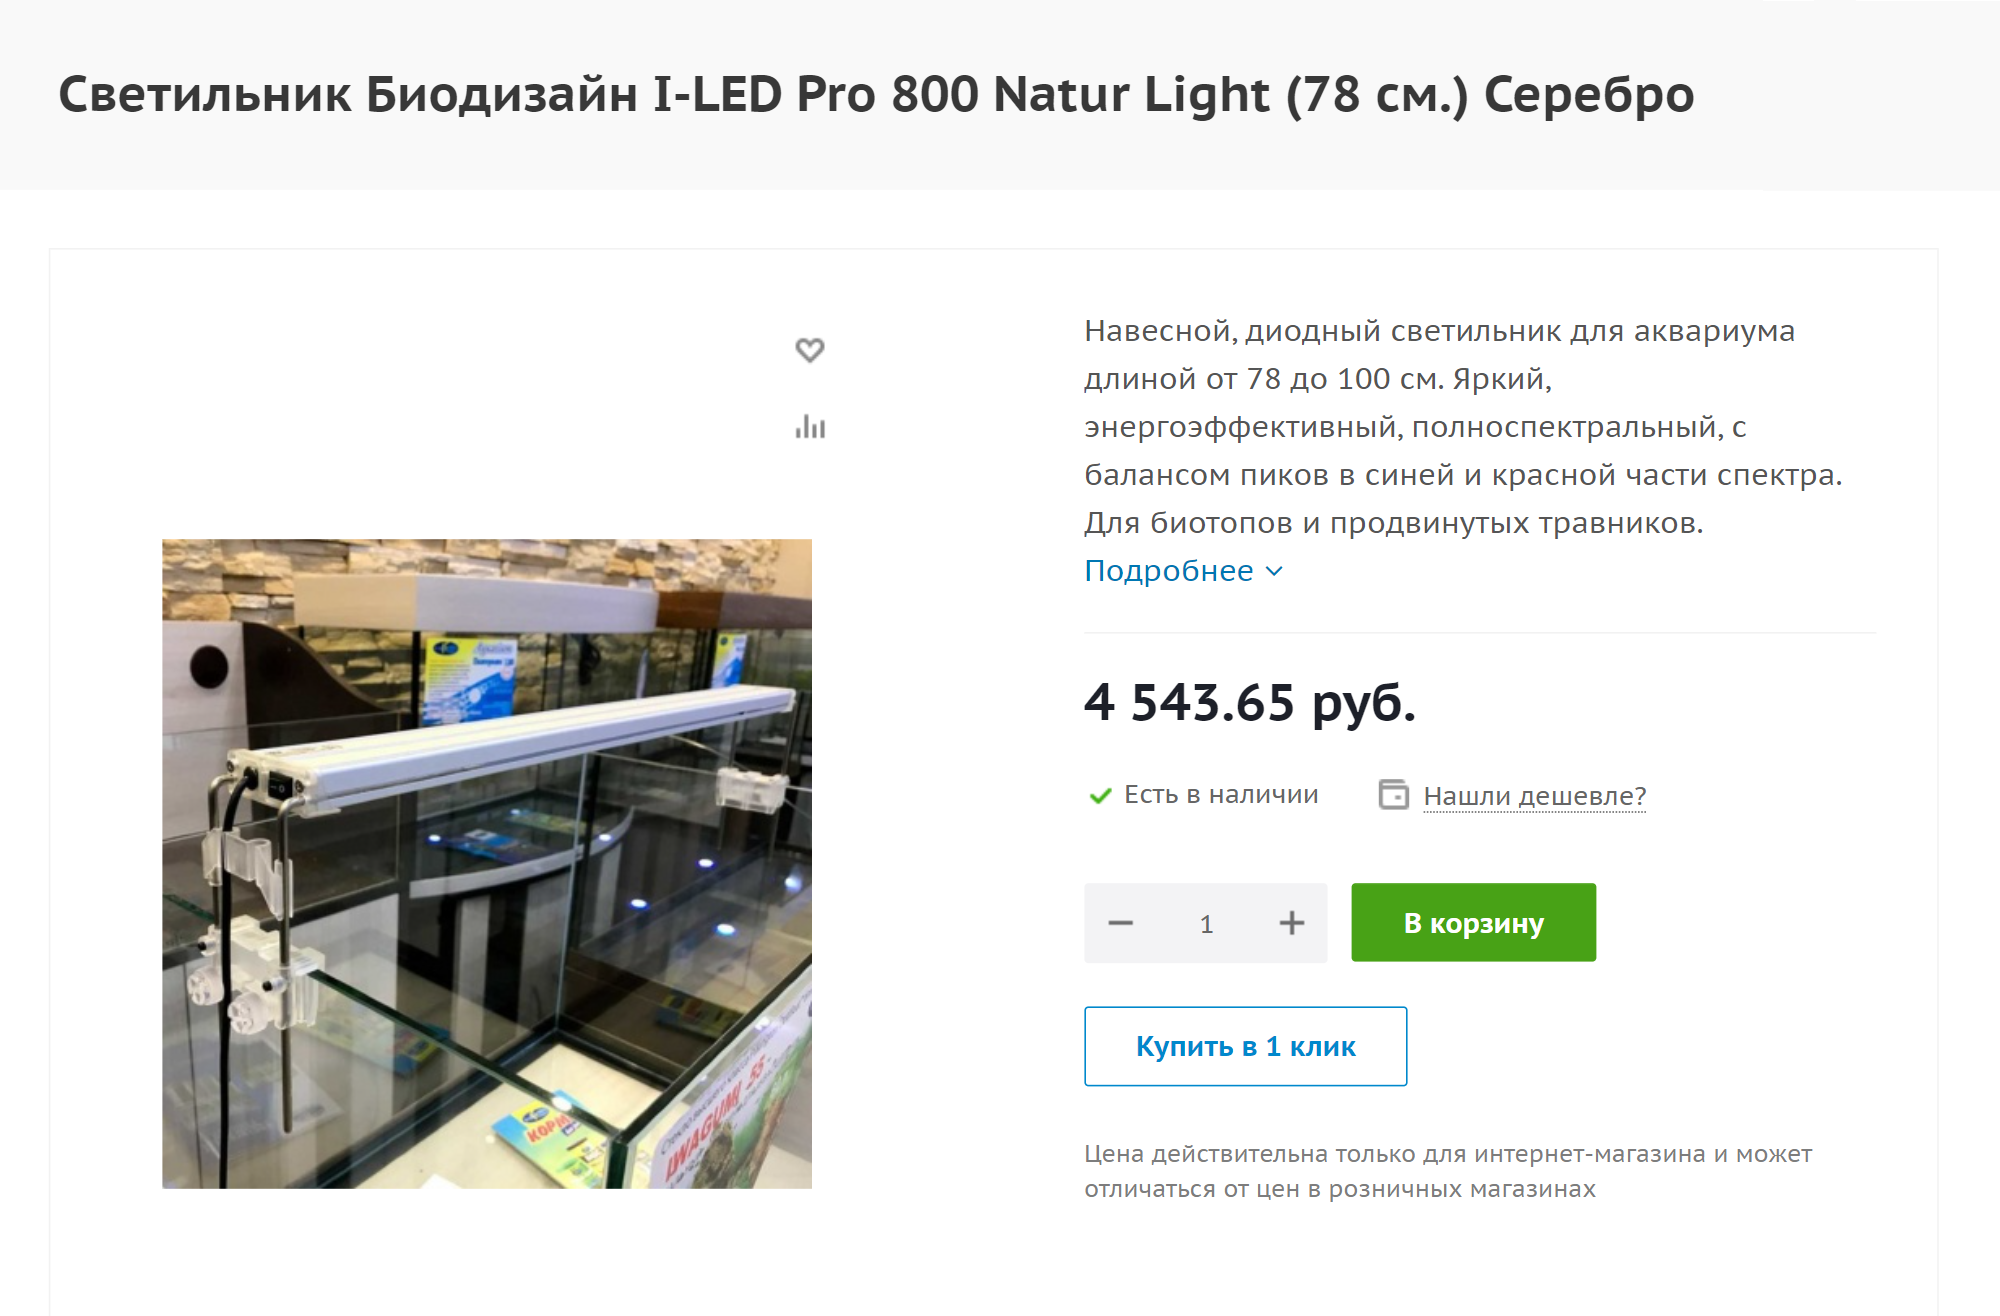 Универсальный тип светильников можно приспособить к аквариуму без отделки и без крышки. Источник: bioprice.ru